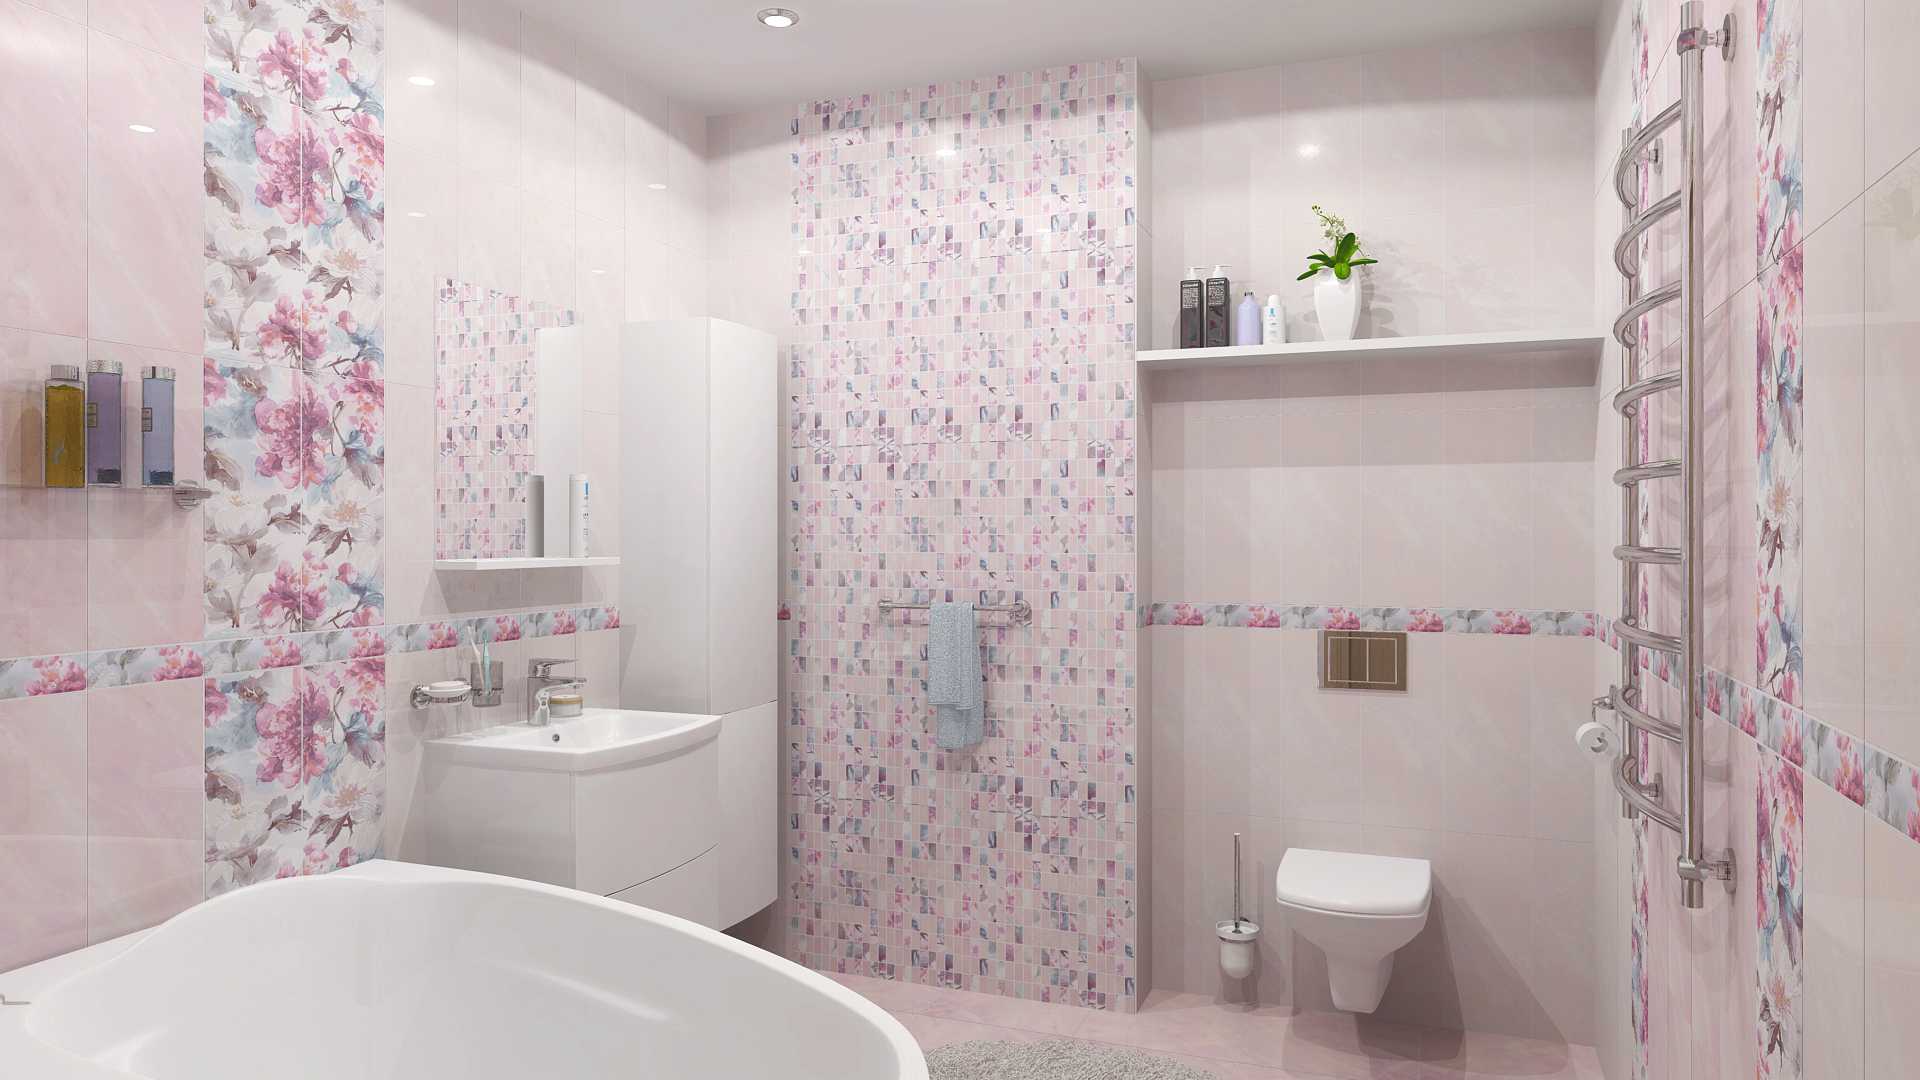 Плитка для современной ванной 100 фото - дизайн, цвет, виды, правила выбора Современная плитка в маленькой ванной Как выбрать плитку для ванной в современном стиле